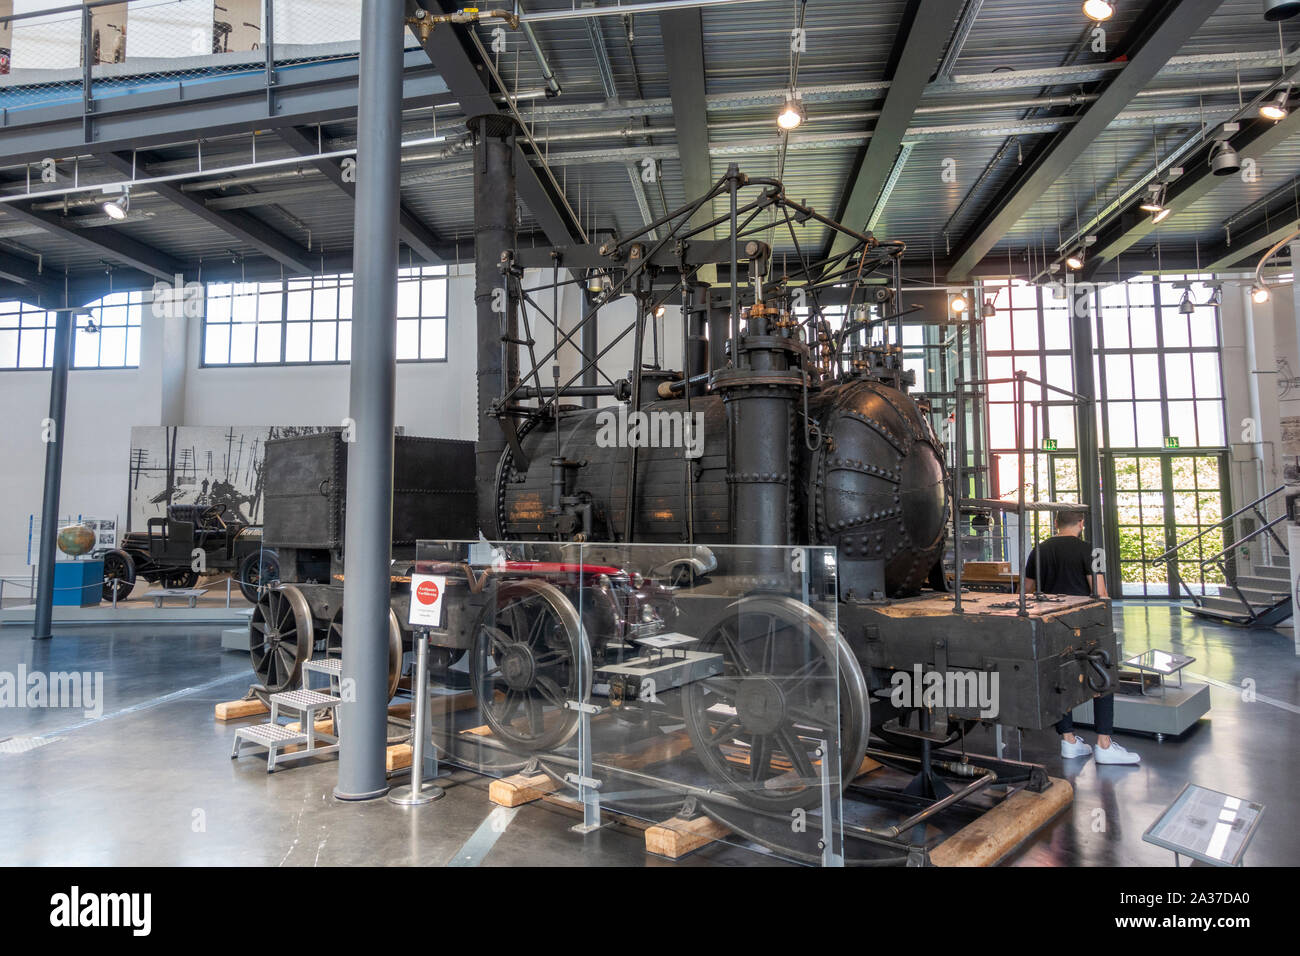 Une reconstruction de l' 'Puffing Billy steam locomotive à partir de 1814 (1906), le Deutsches Museum (Musée allemand des transports Verkehrszentrum), Munich, Allemagne. Banque D'Images